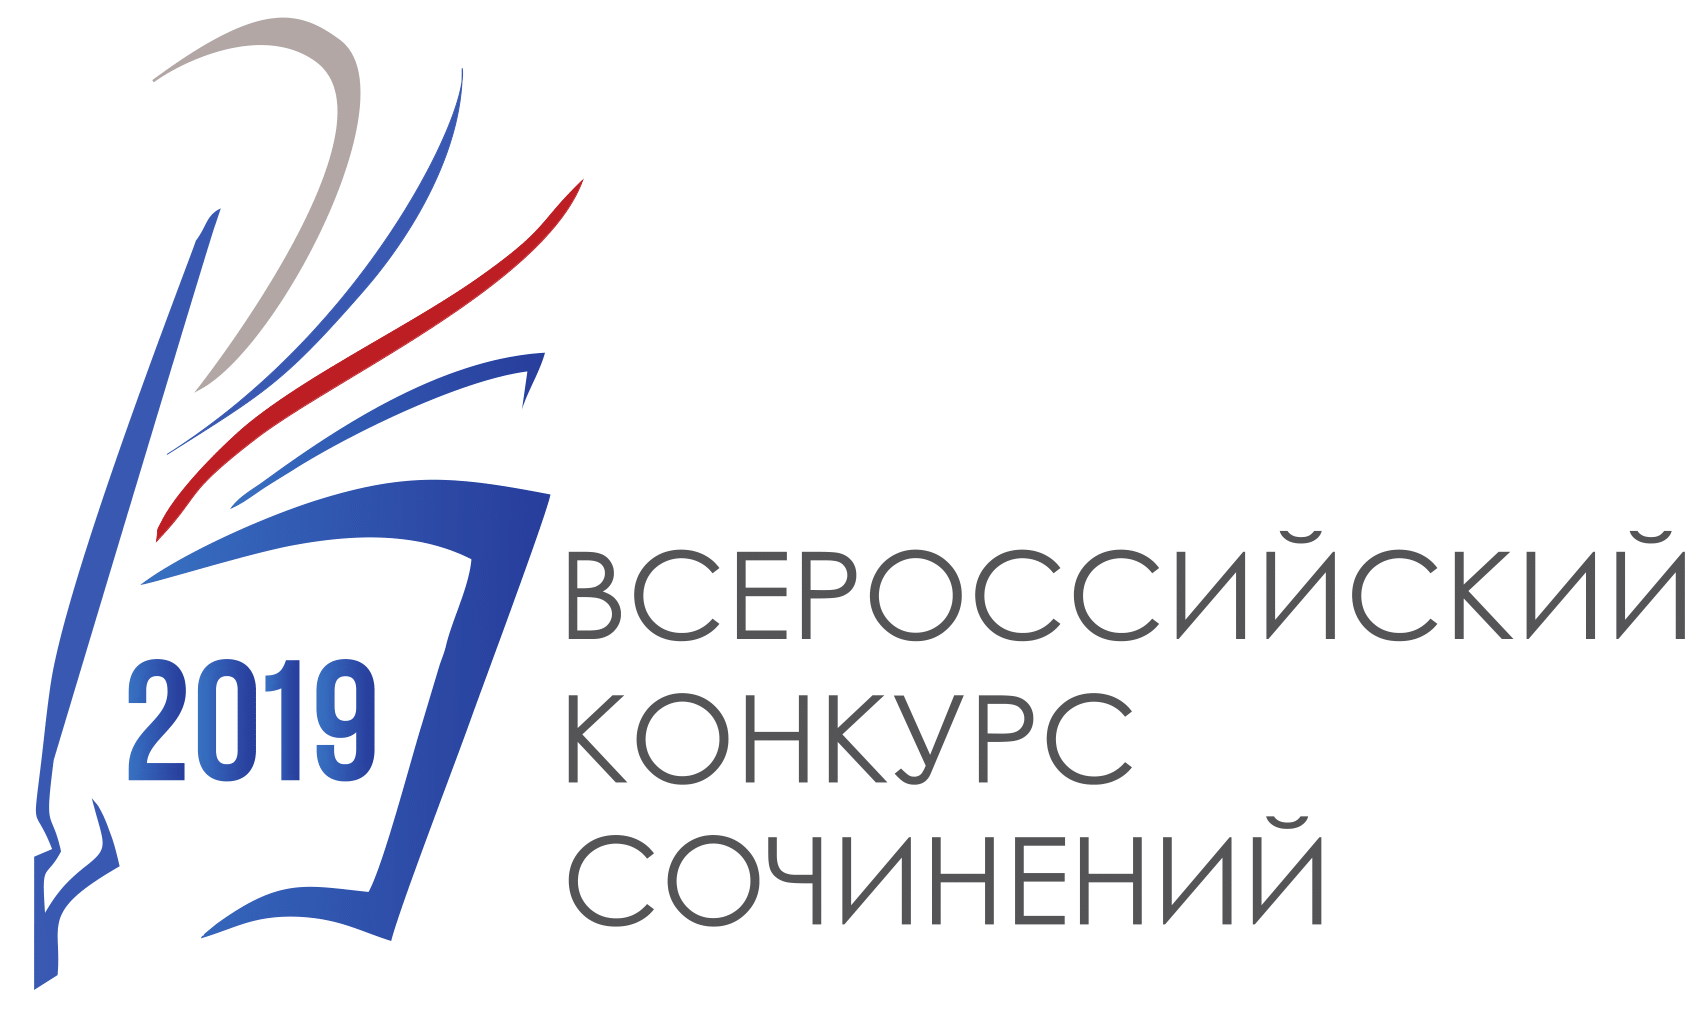 Объявлены победители регионального этапа Всероссийского конкурса сочинений 